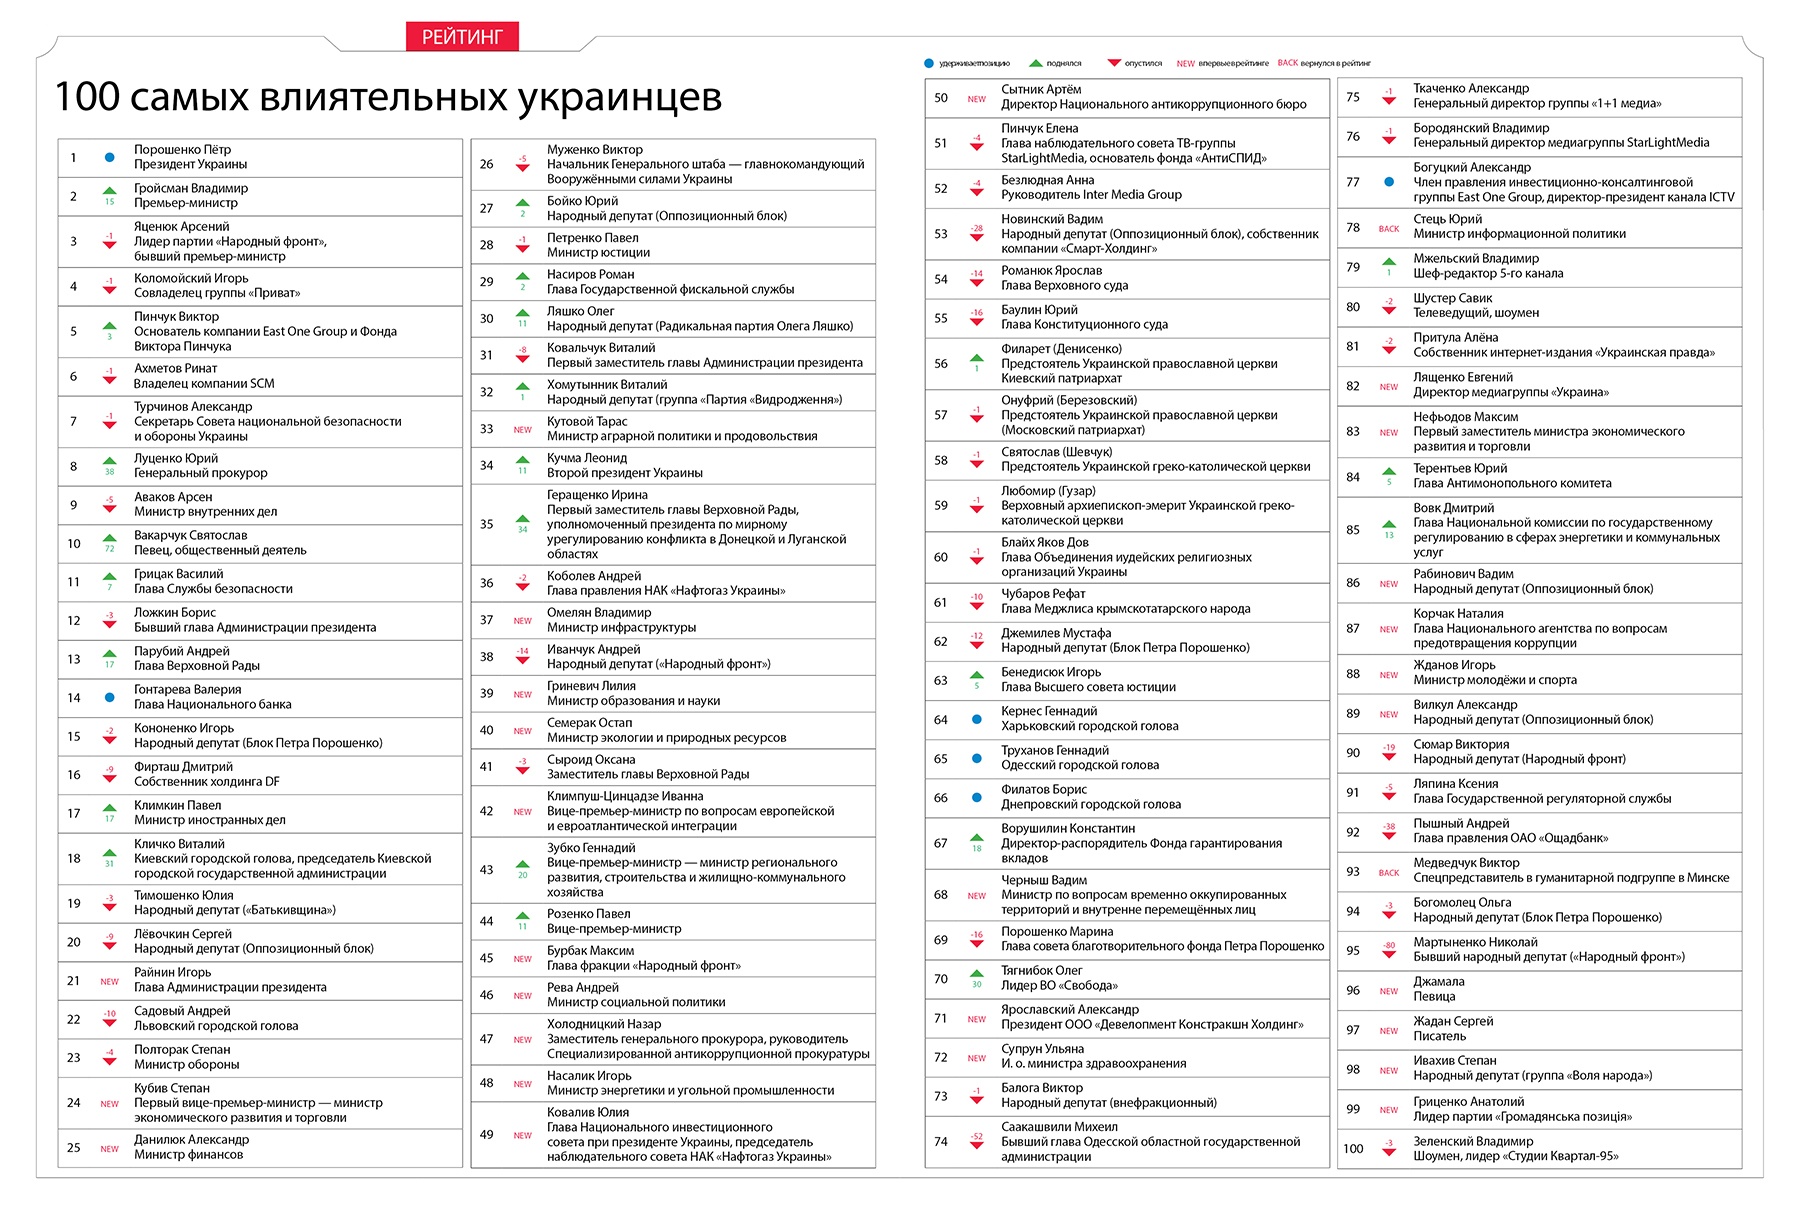 ТОП-100 найвпливовіших українців